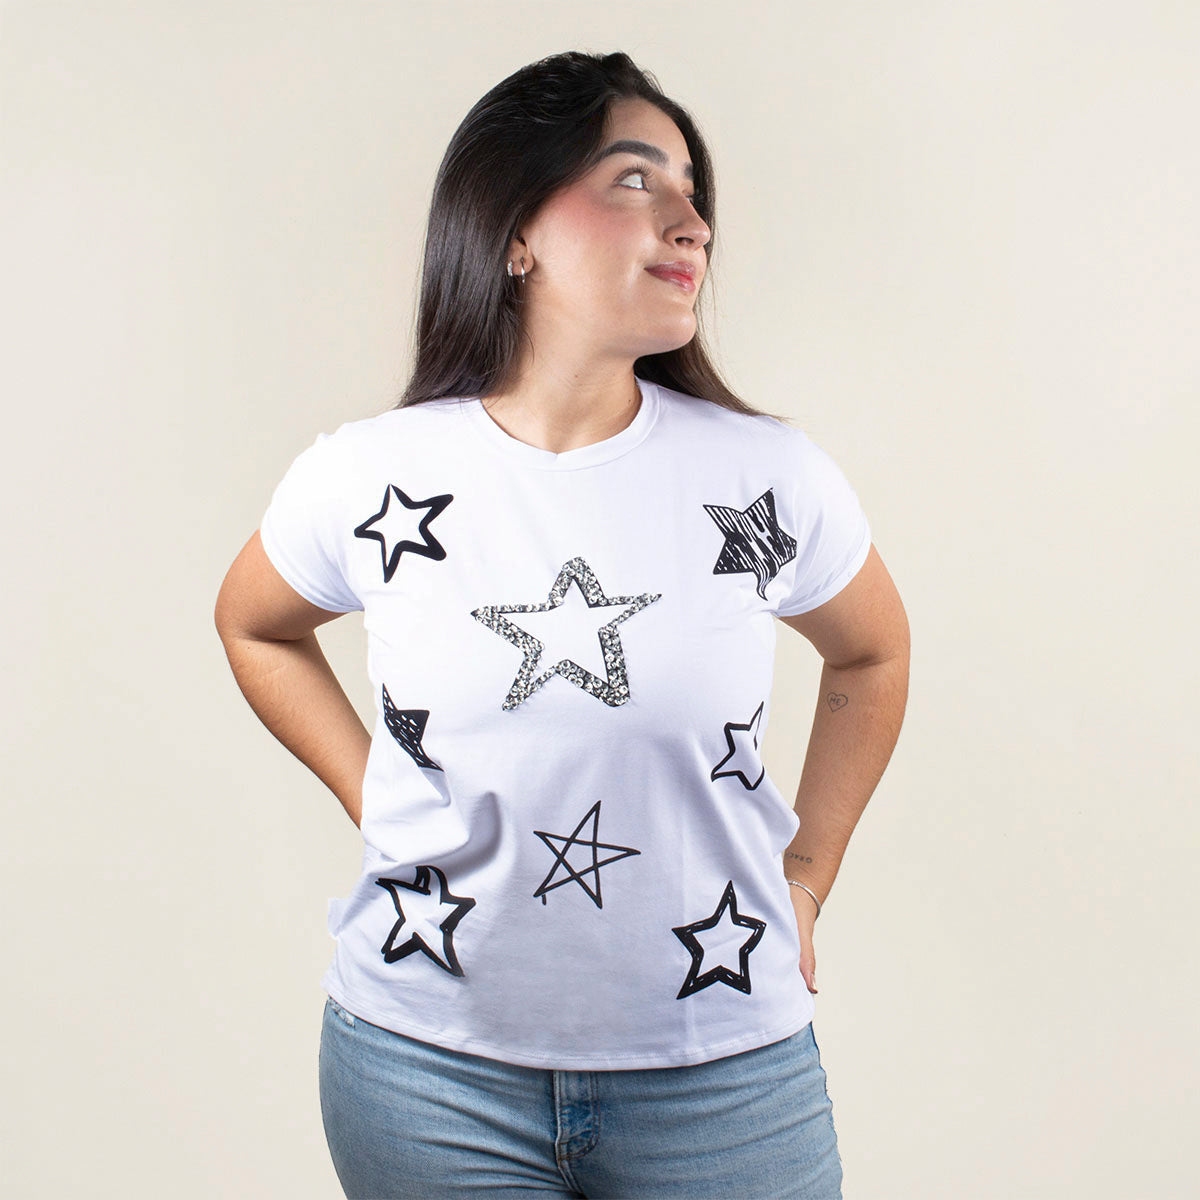 Camiseta básica color blanco con estampado de estrellas